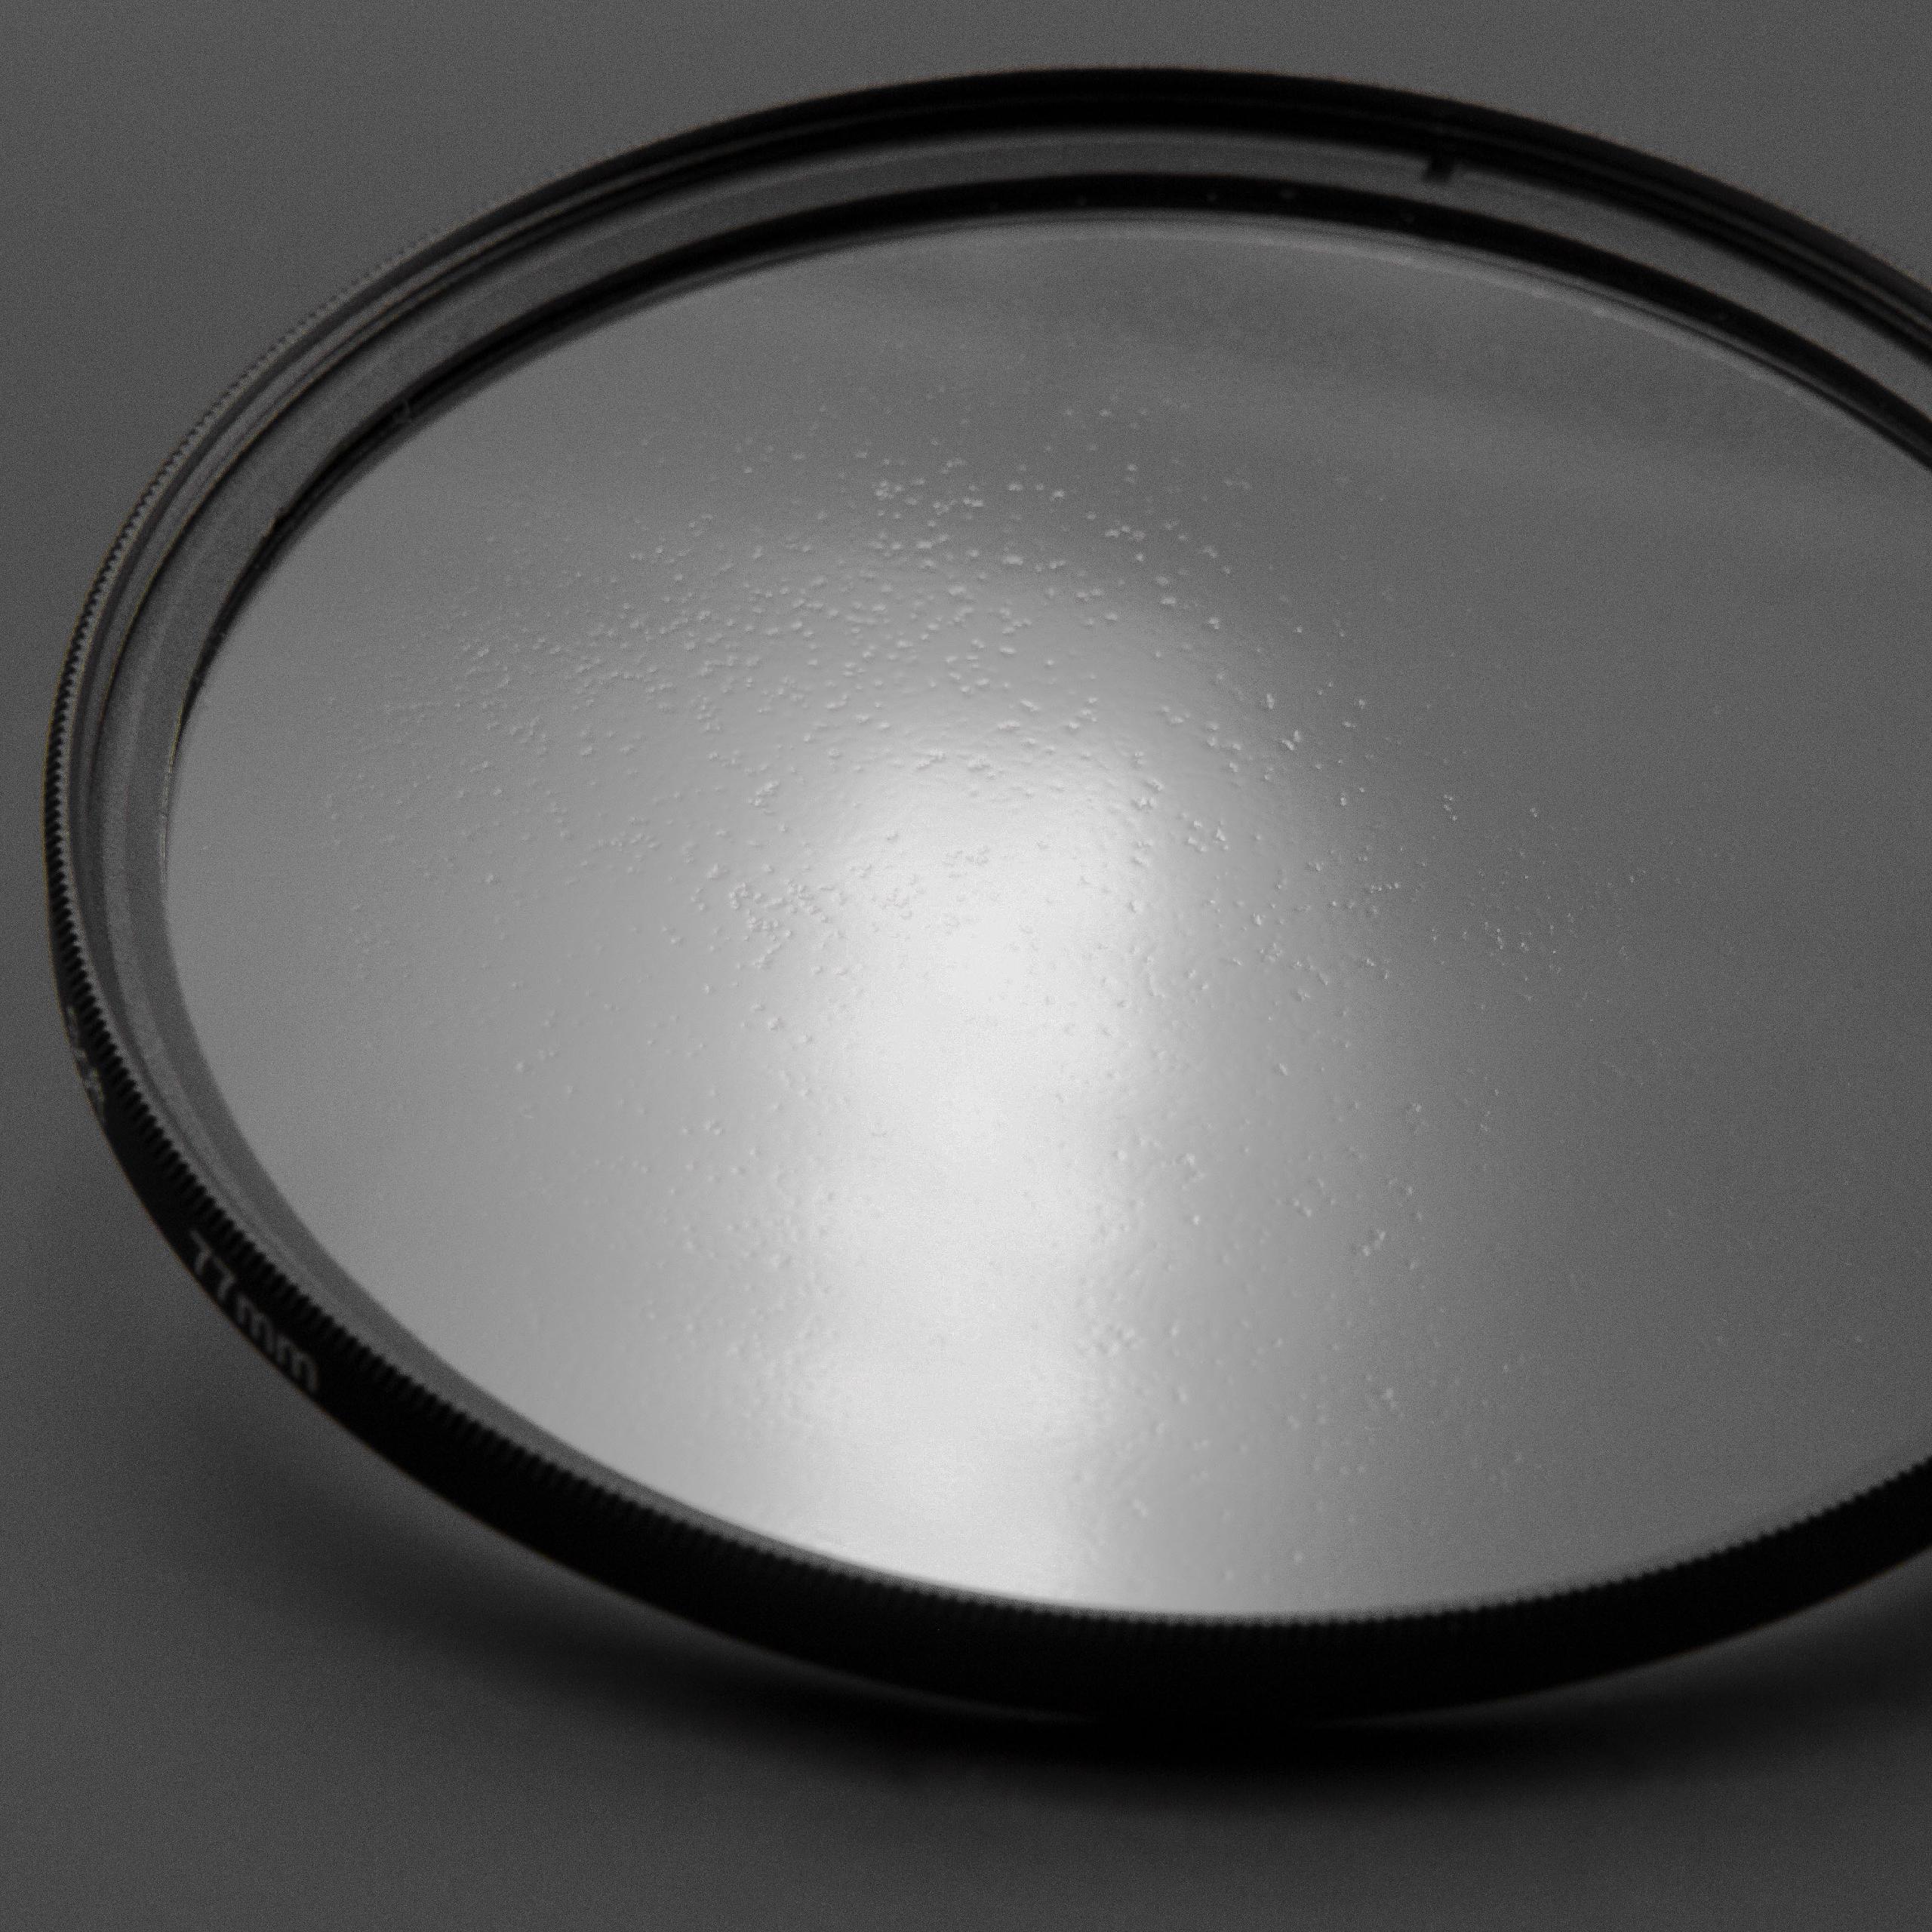 Filtro soft-focus per fotocamere e obiettivi con filettatura da 49 mm 